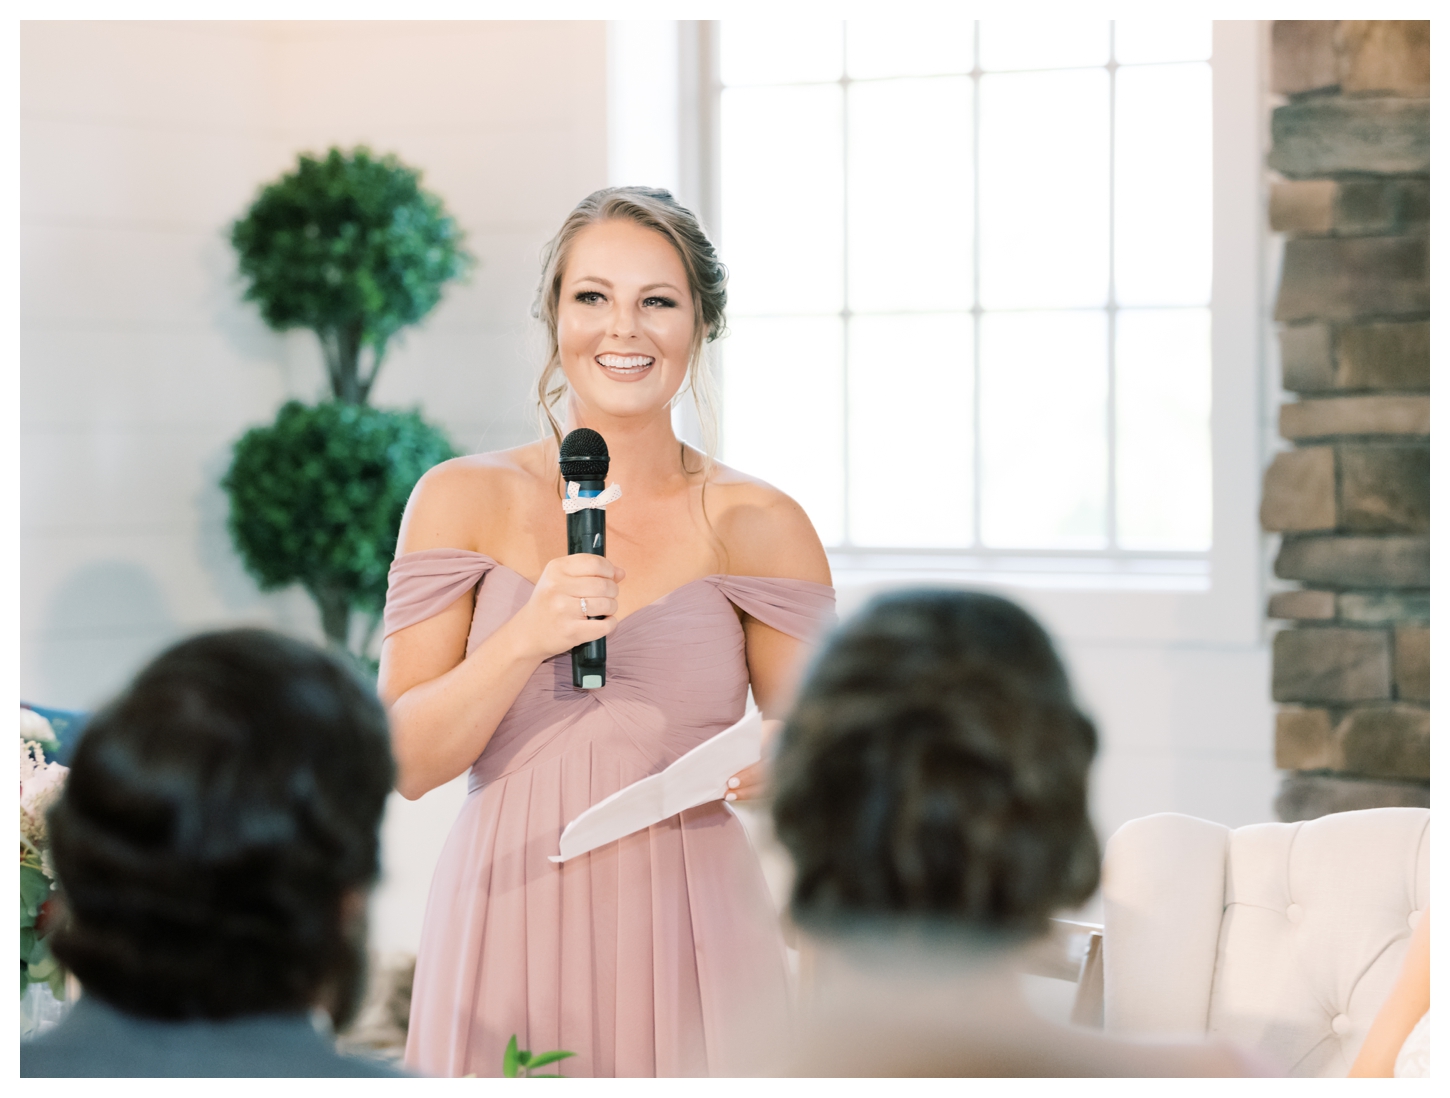 Wedding Speech